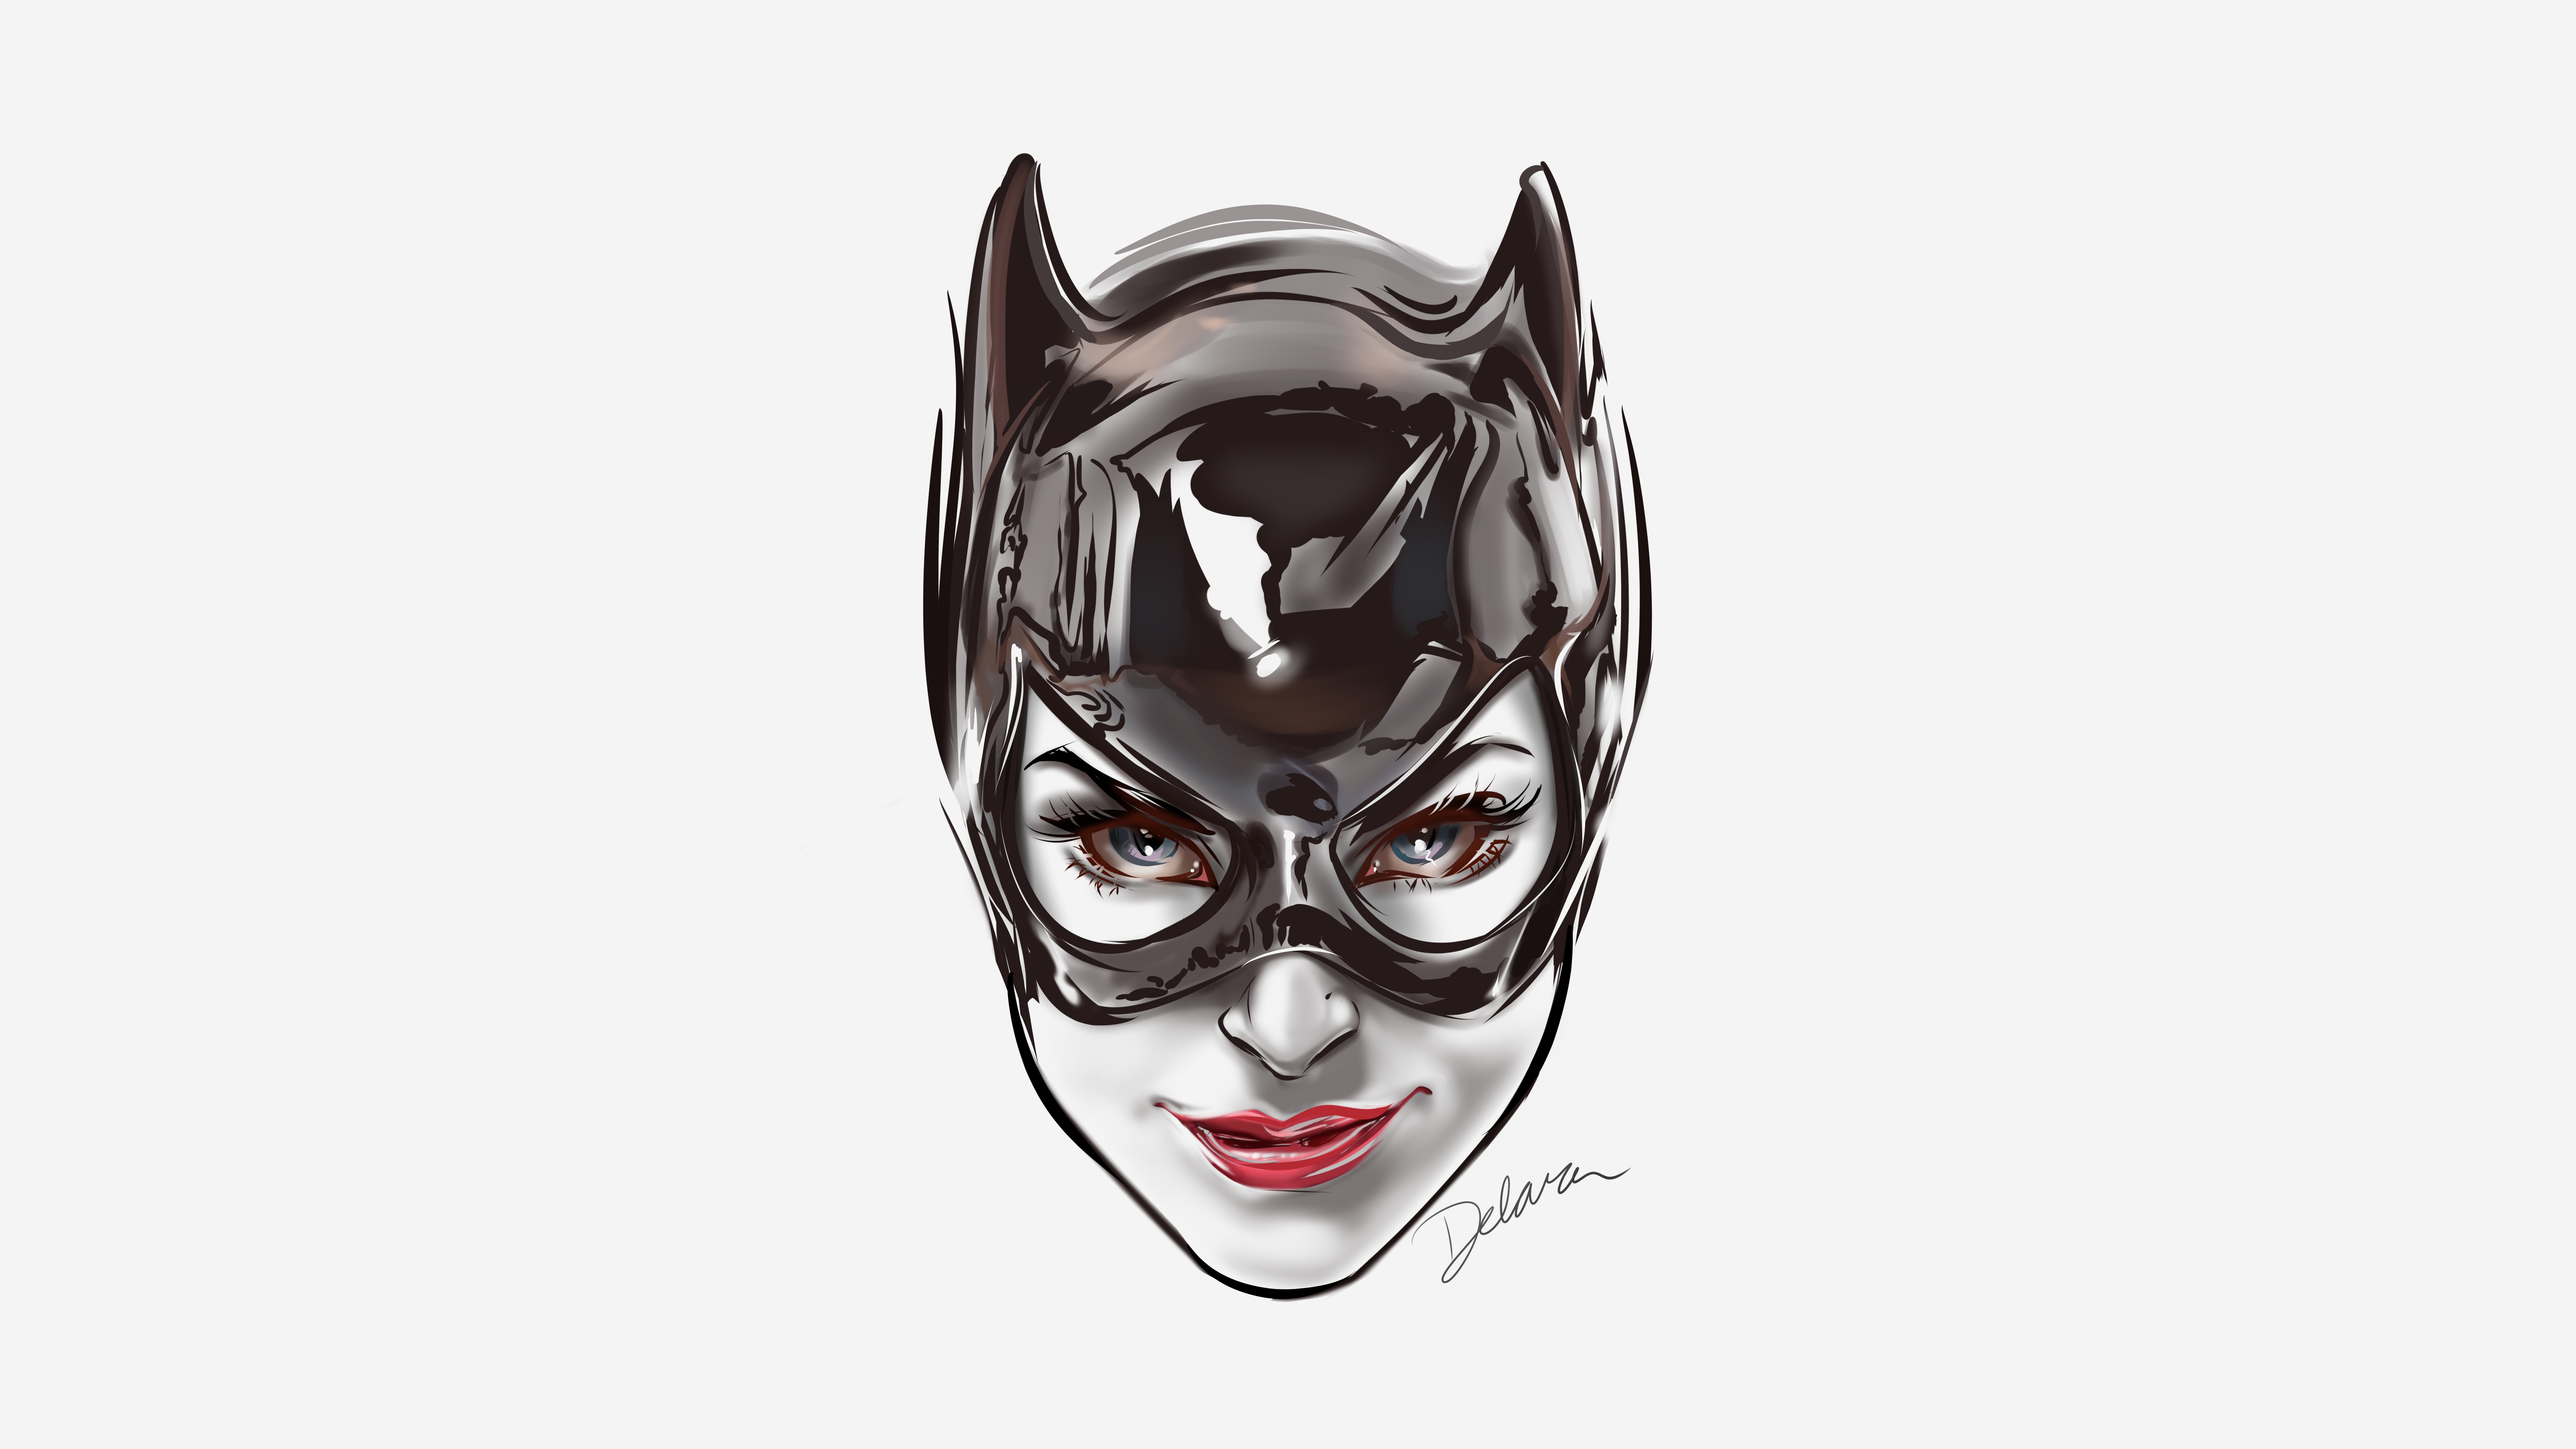 Обои Catwoman лицо Batman на рабочий стол